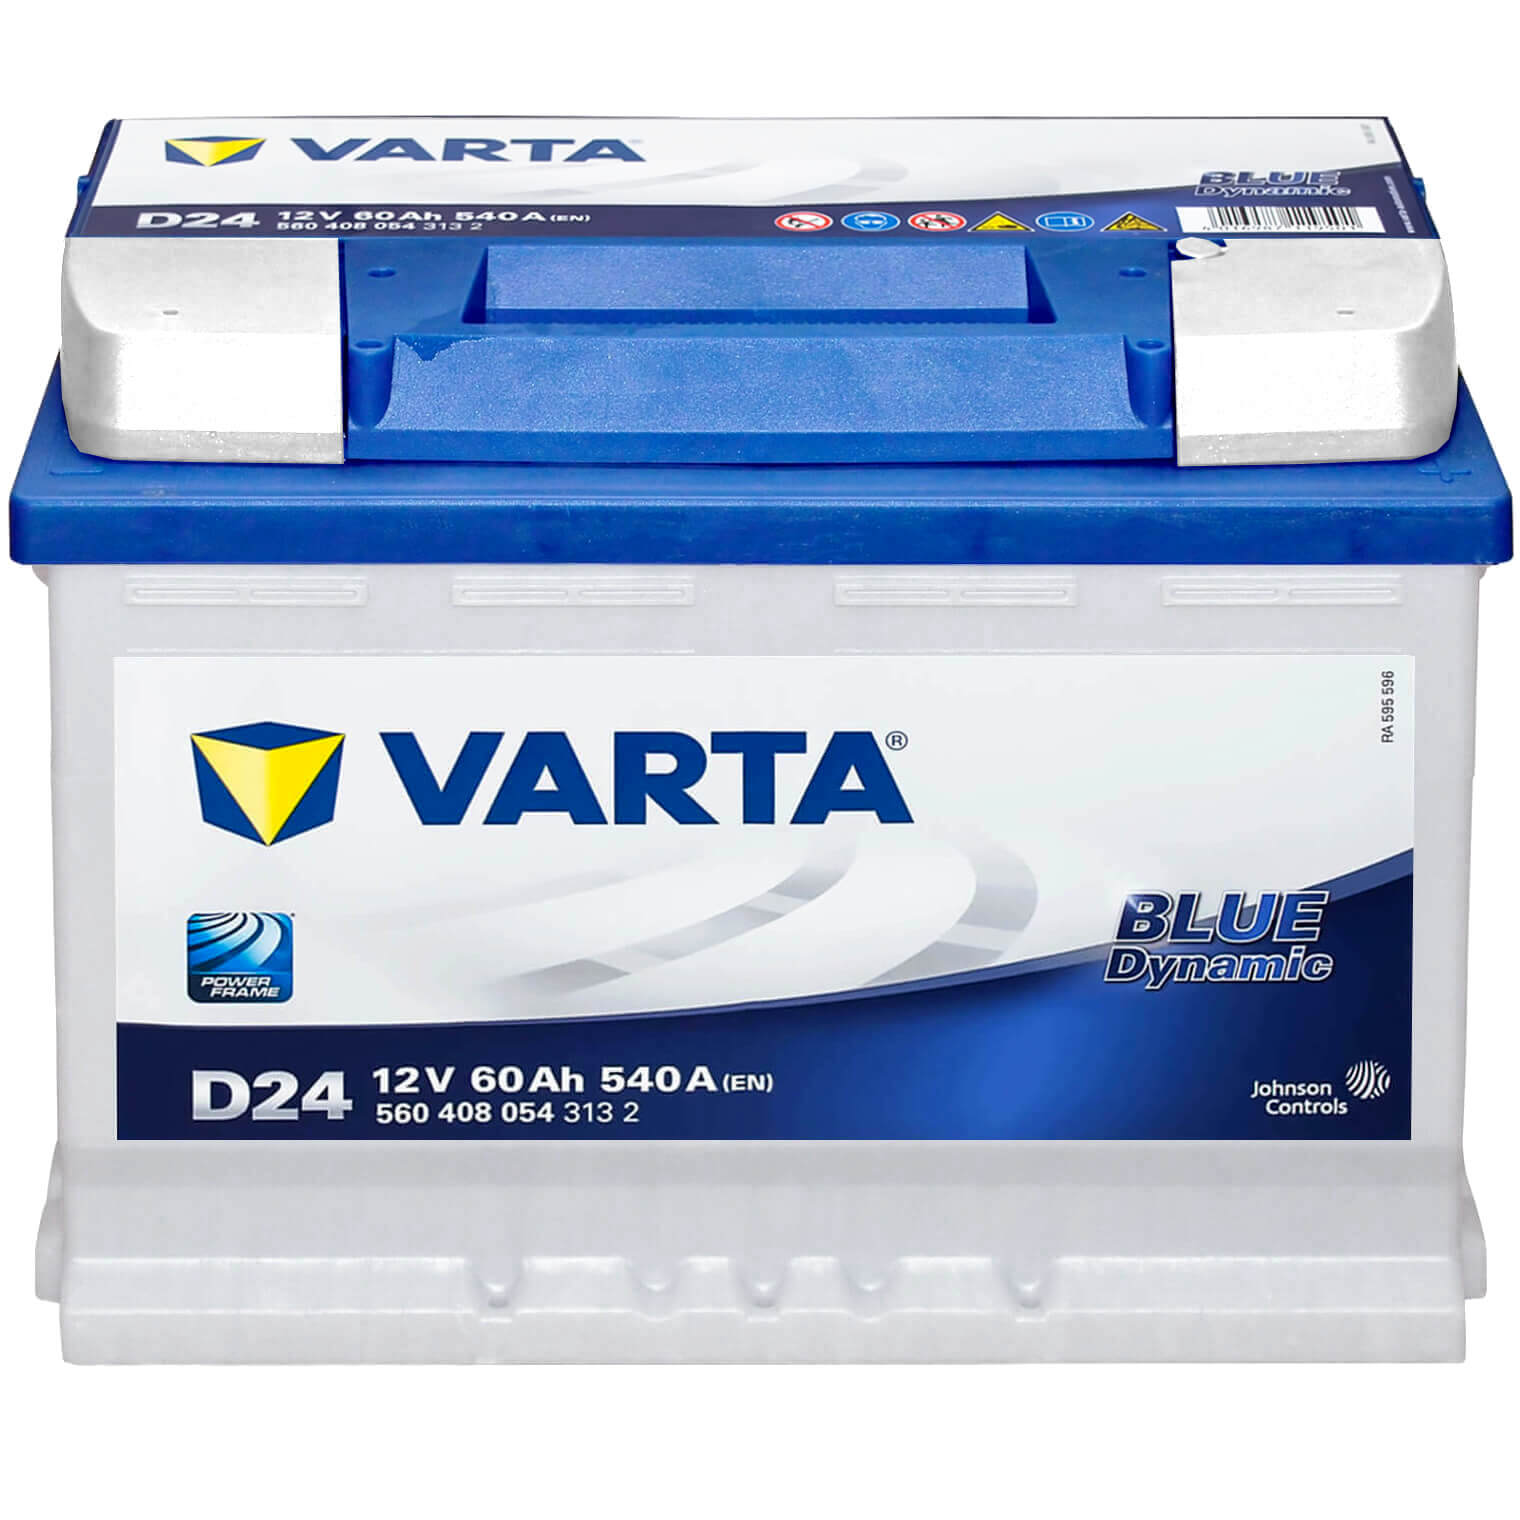 Battery Shop L2 D24 VARTA 60AH 540A